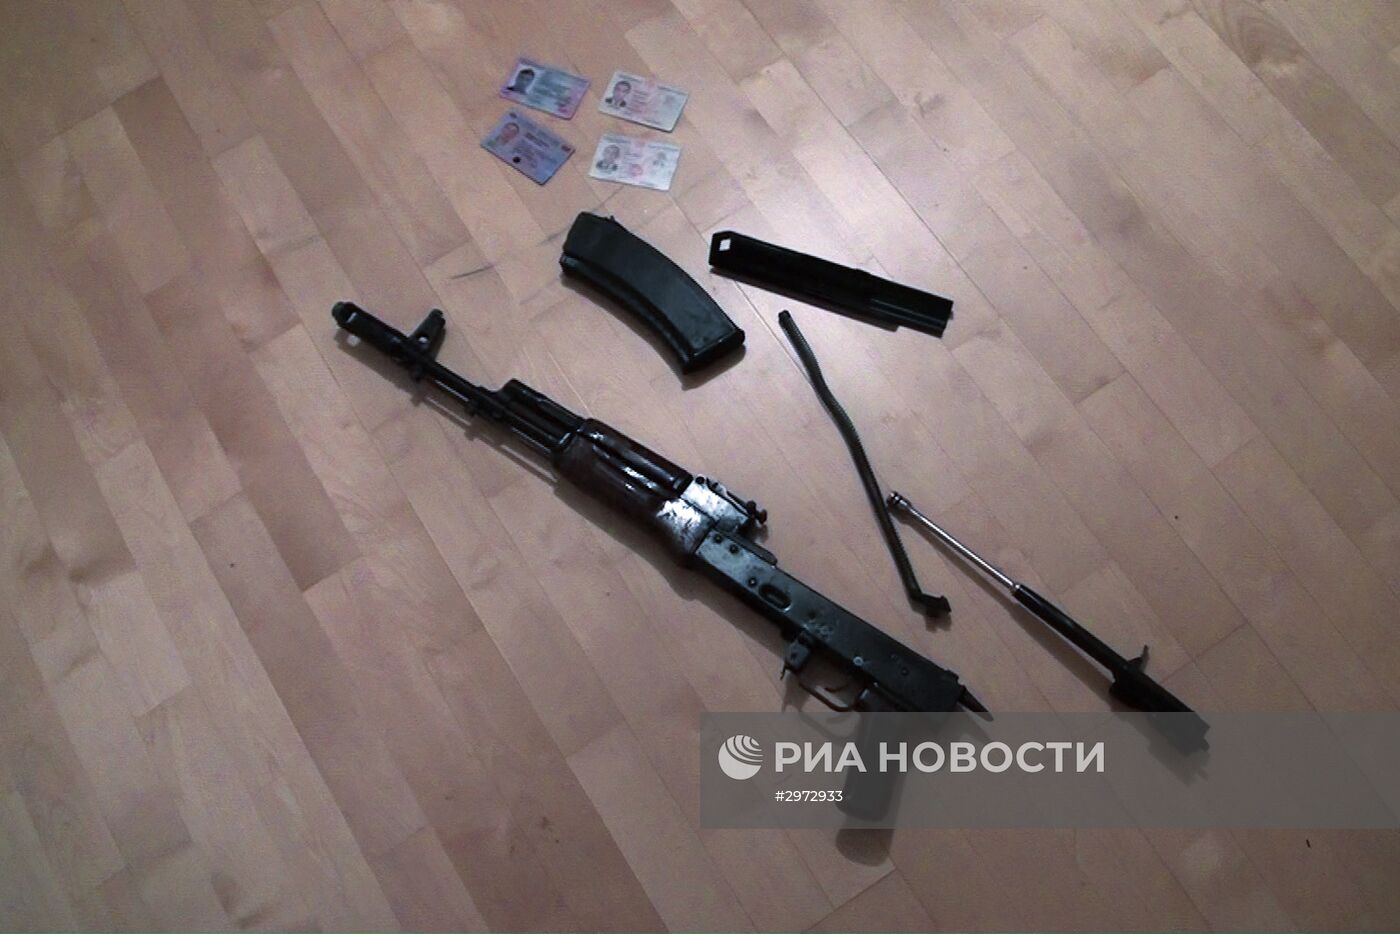 ФСБ задержала группу, готовившую теракты в Москве и Петербурге